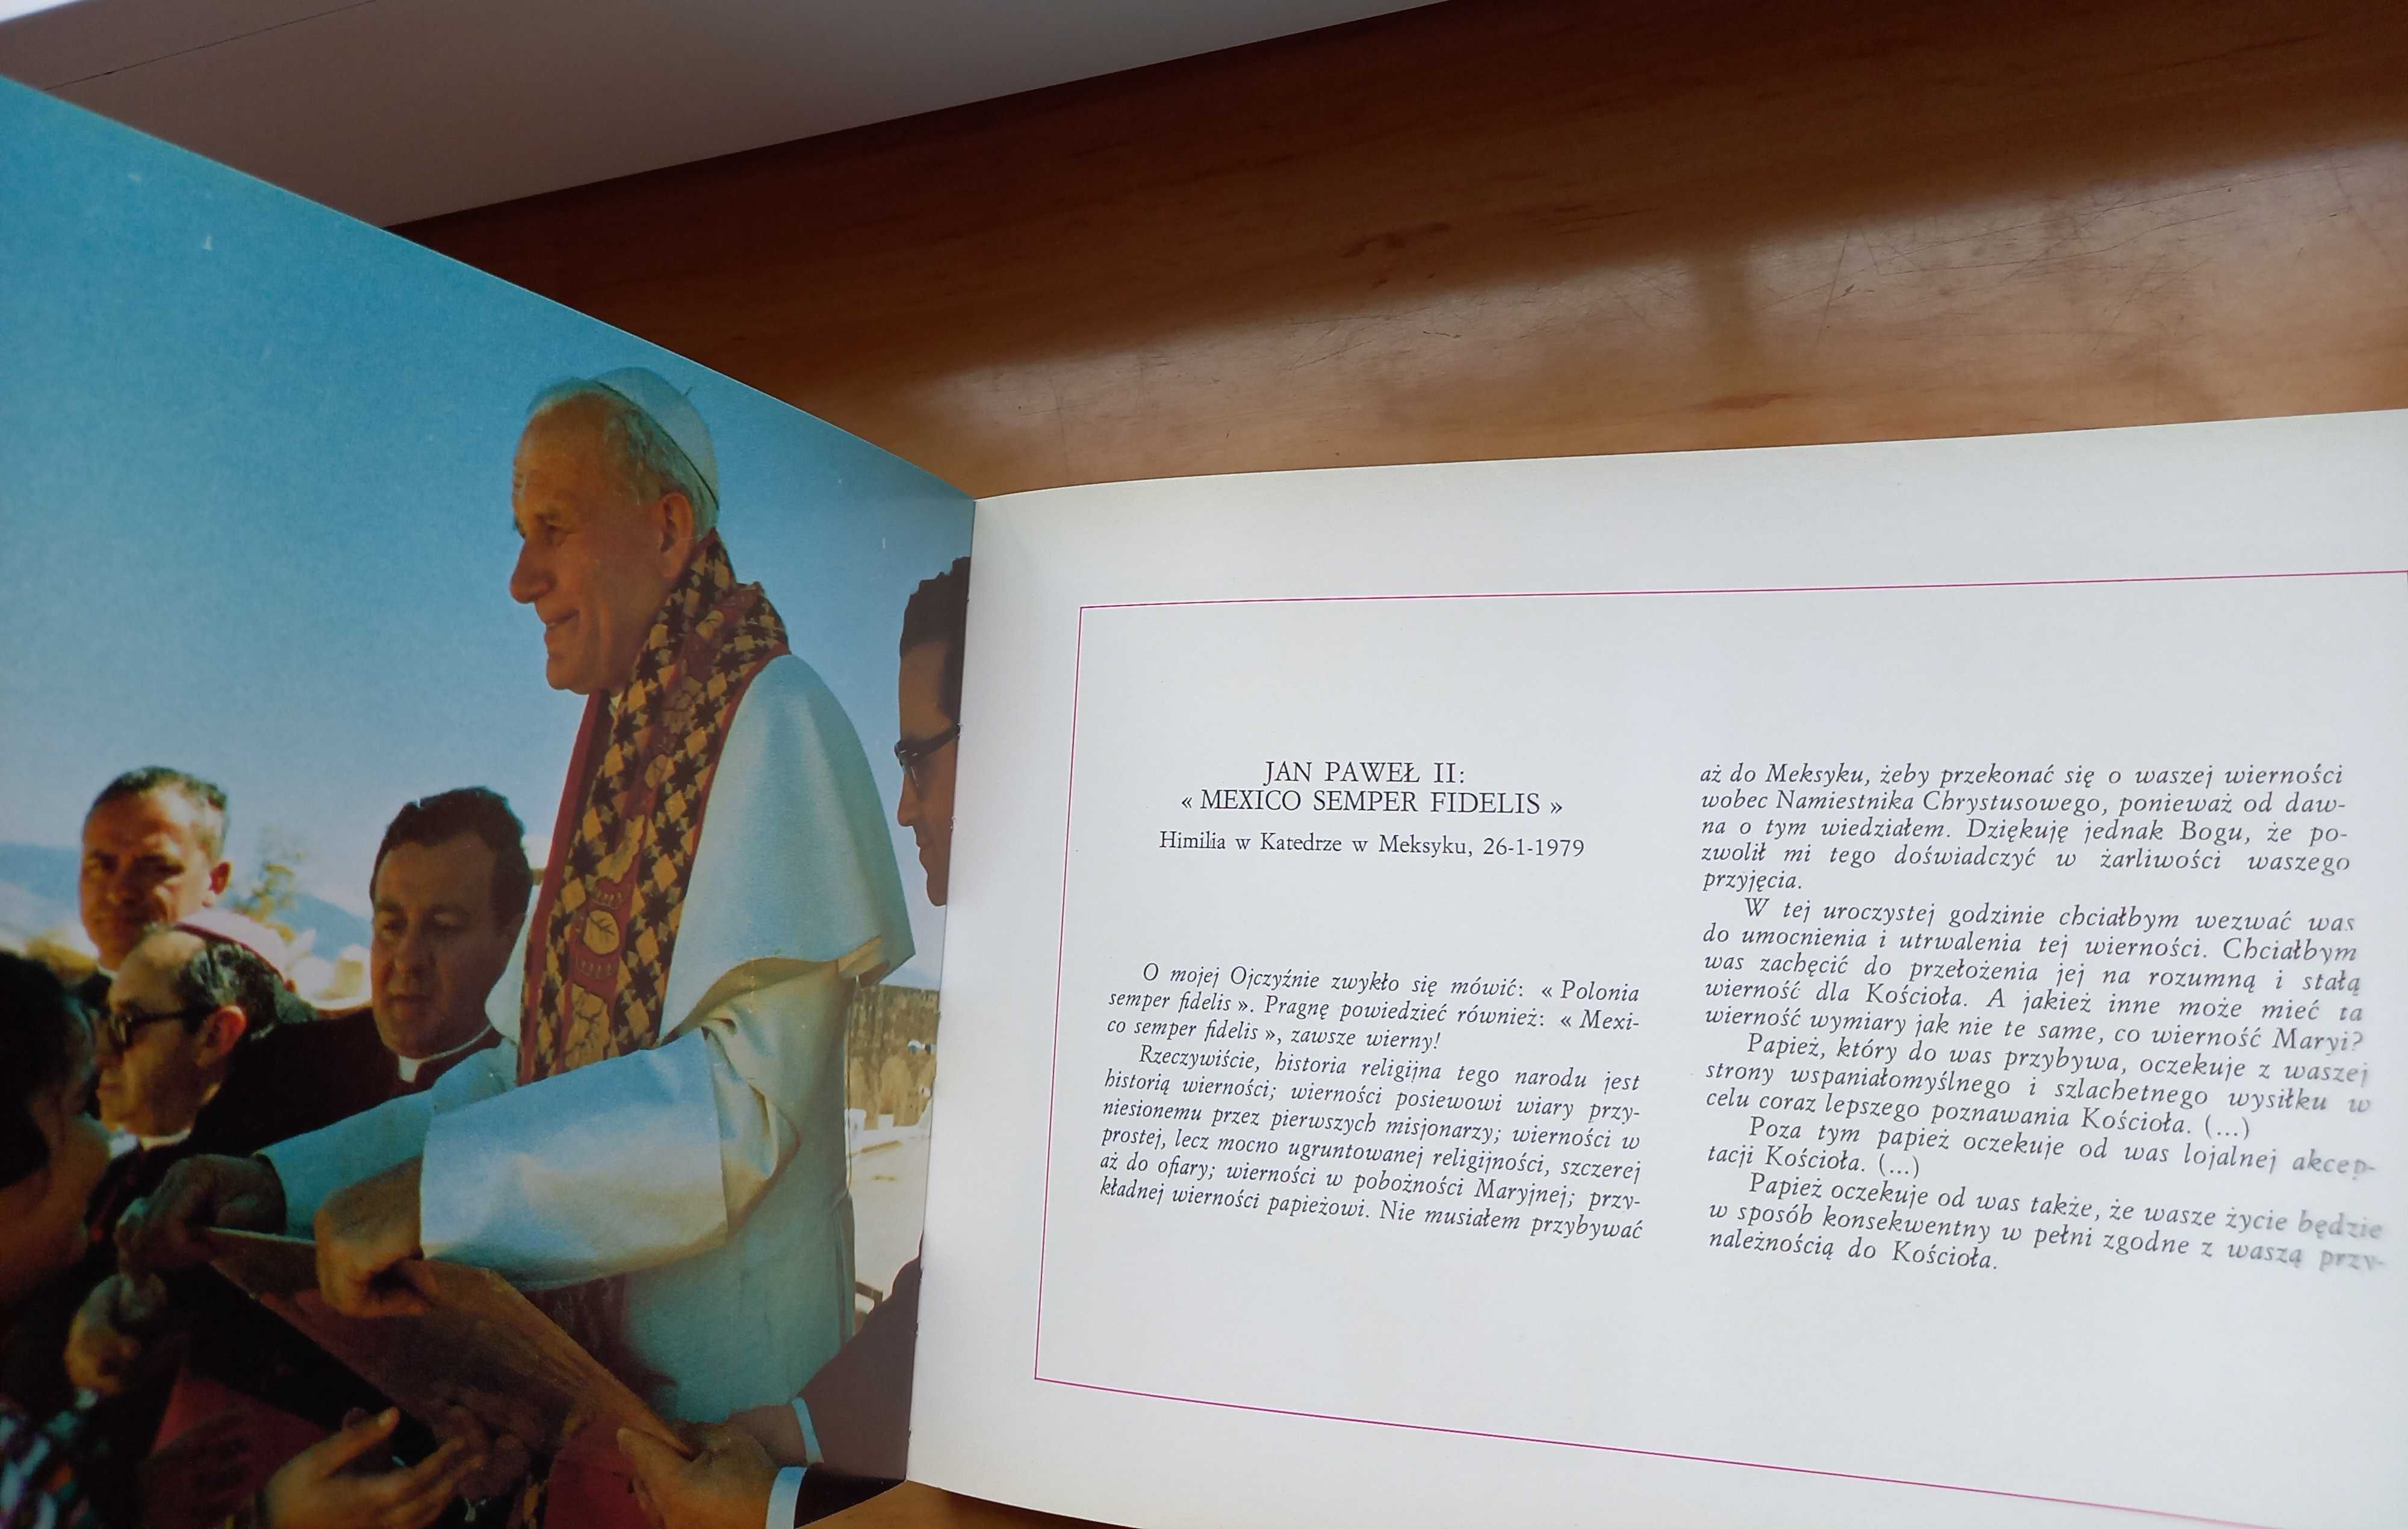 Podróże Apostolskie papieża Jana Pawła II zdjęcia Arturo Mari album